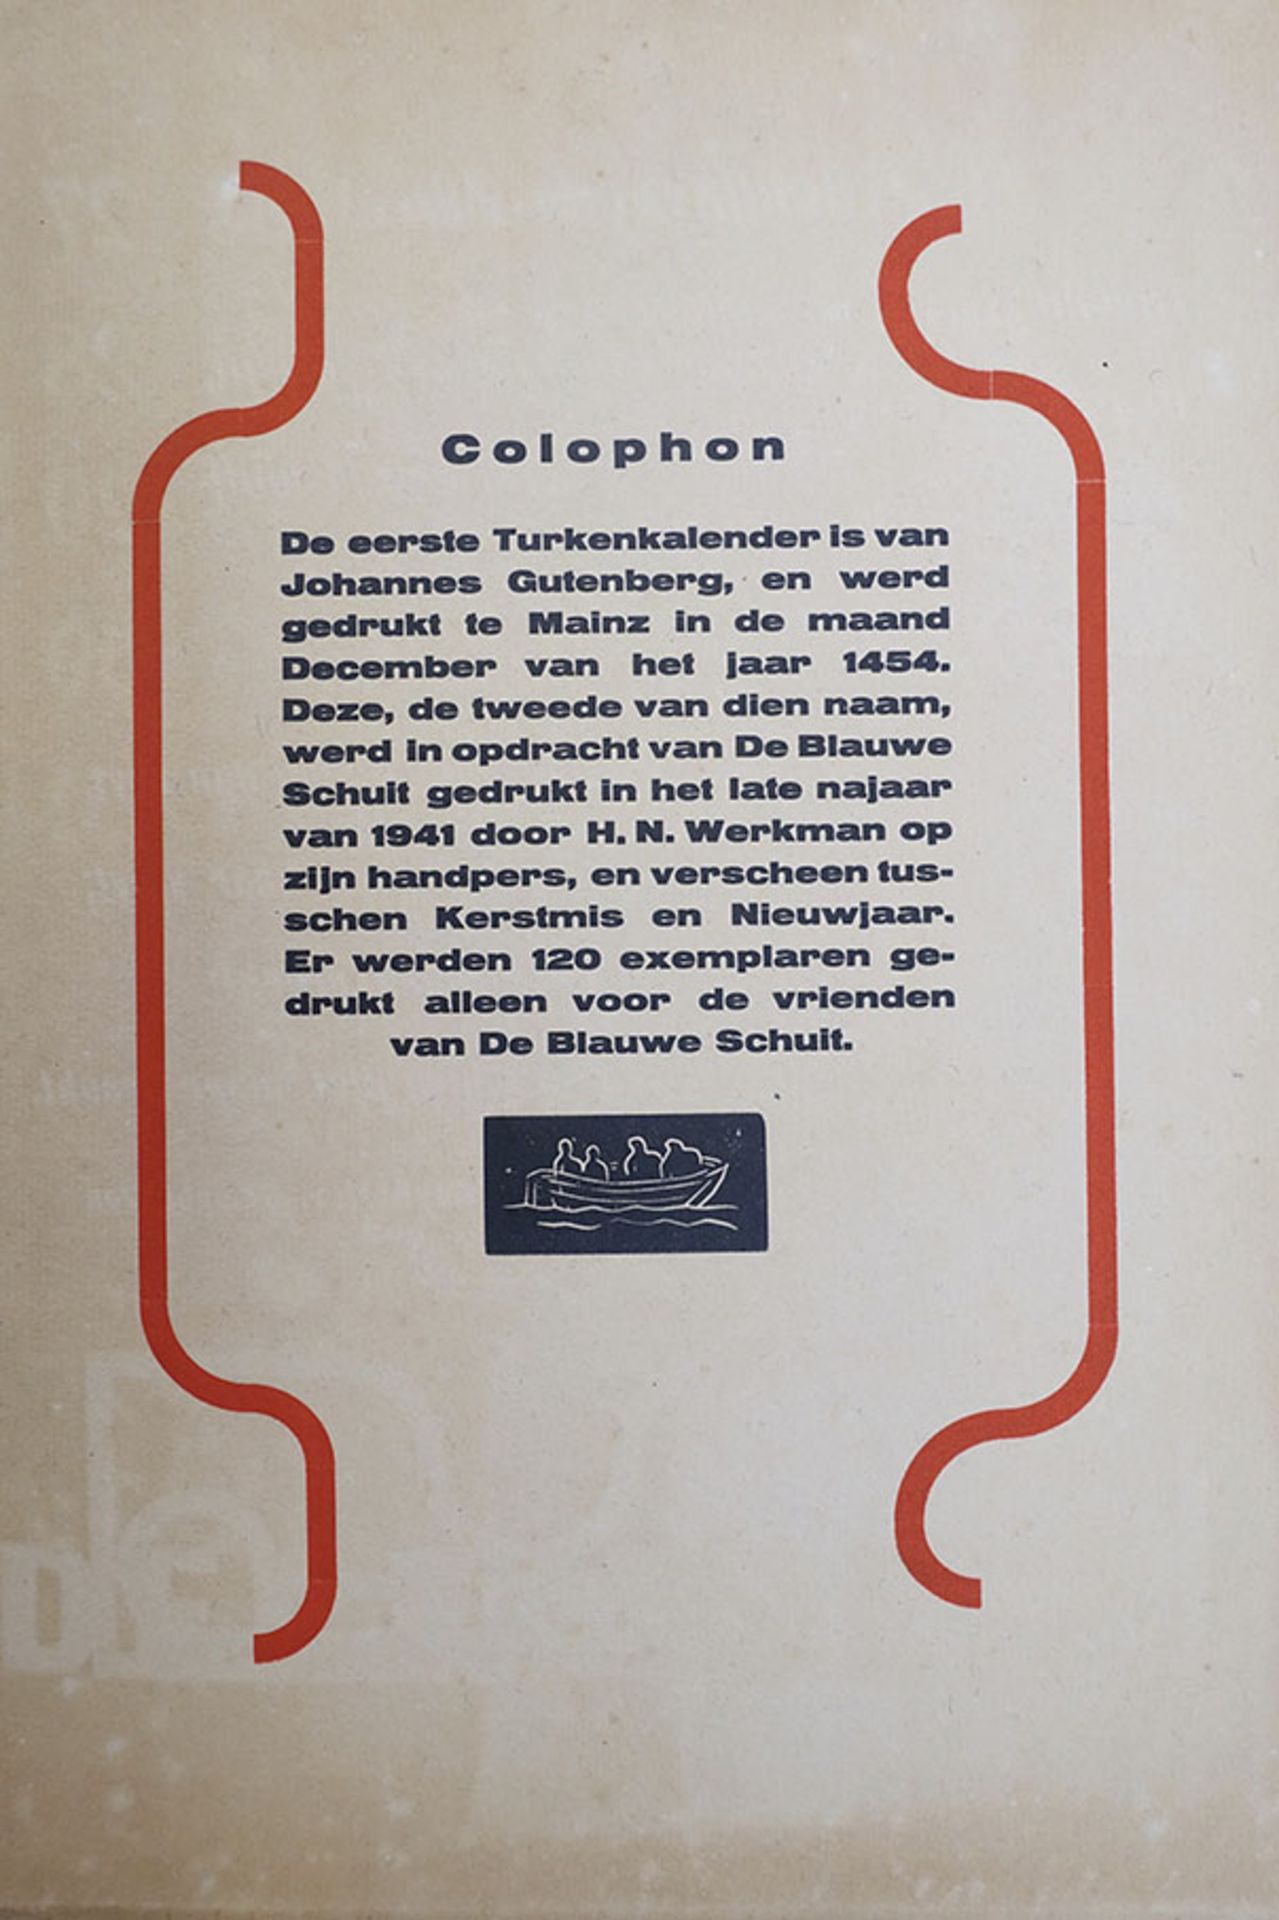 WERKMAN -- TURKENKALENDER 1942. (Samengest. d. A. Buning. N.pl. (Heerenveen), De Blauwe Schuit, - Image 7 of 7